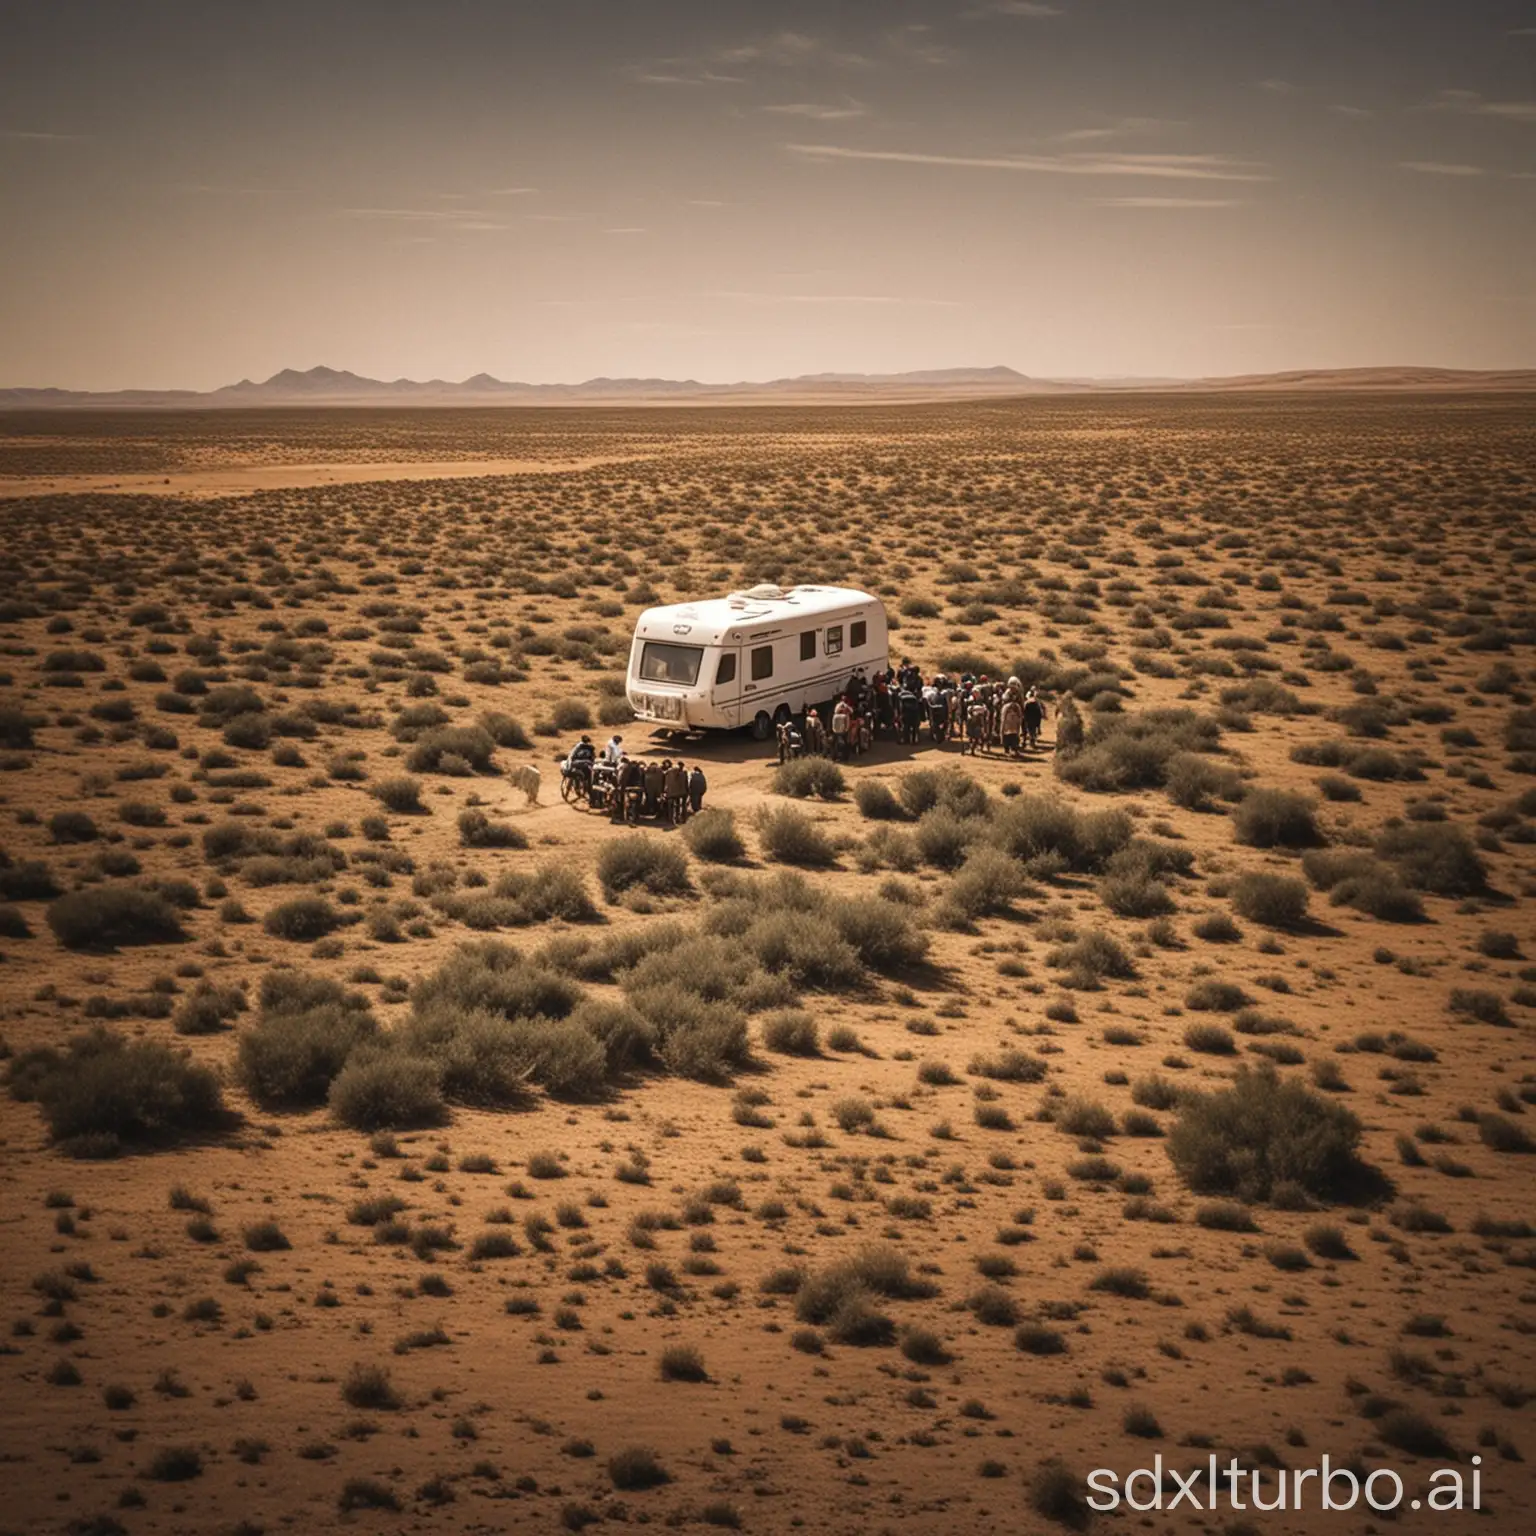 Colorful-Caravan-Traveling-Through-Desert-Landscape